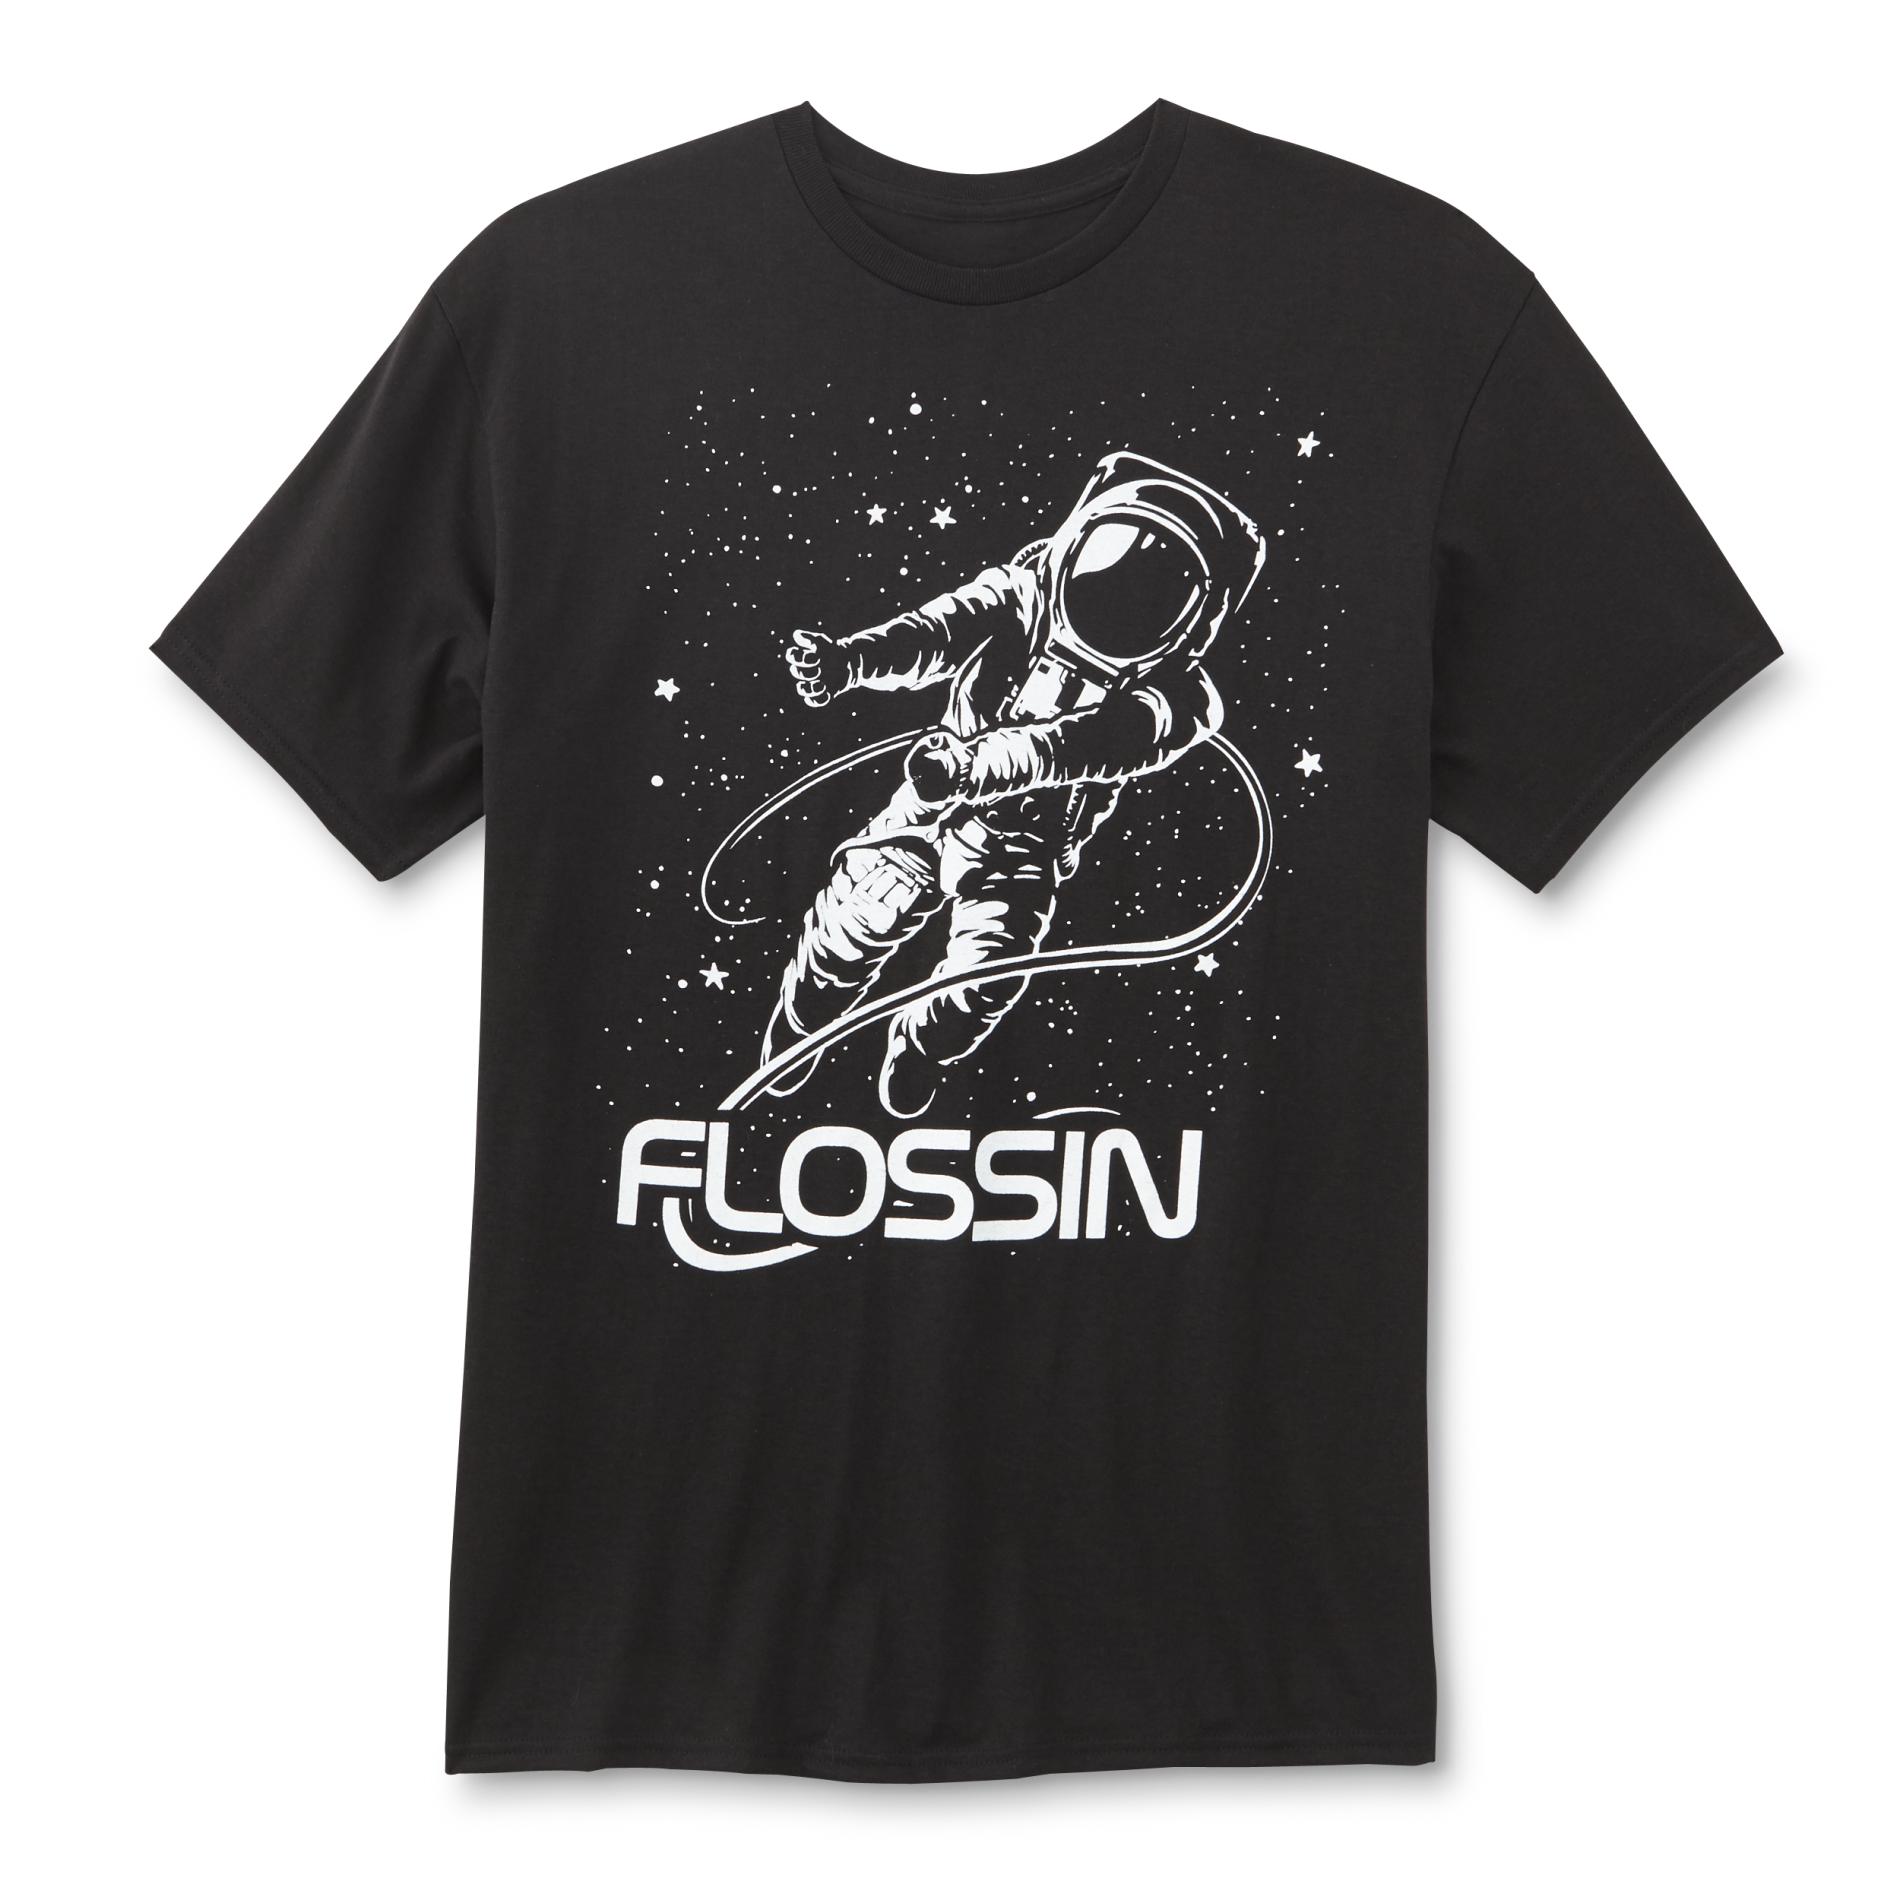 Screen Tee Market Brands Men's Graphic T-Shirt-Flossin/Astronaut